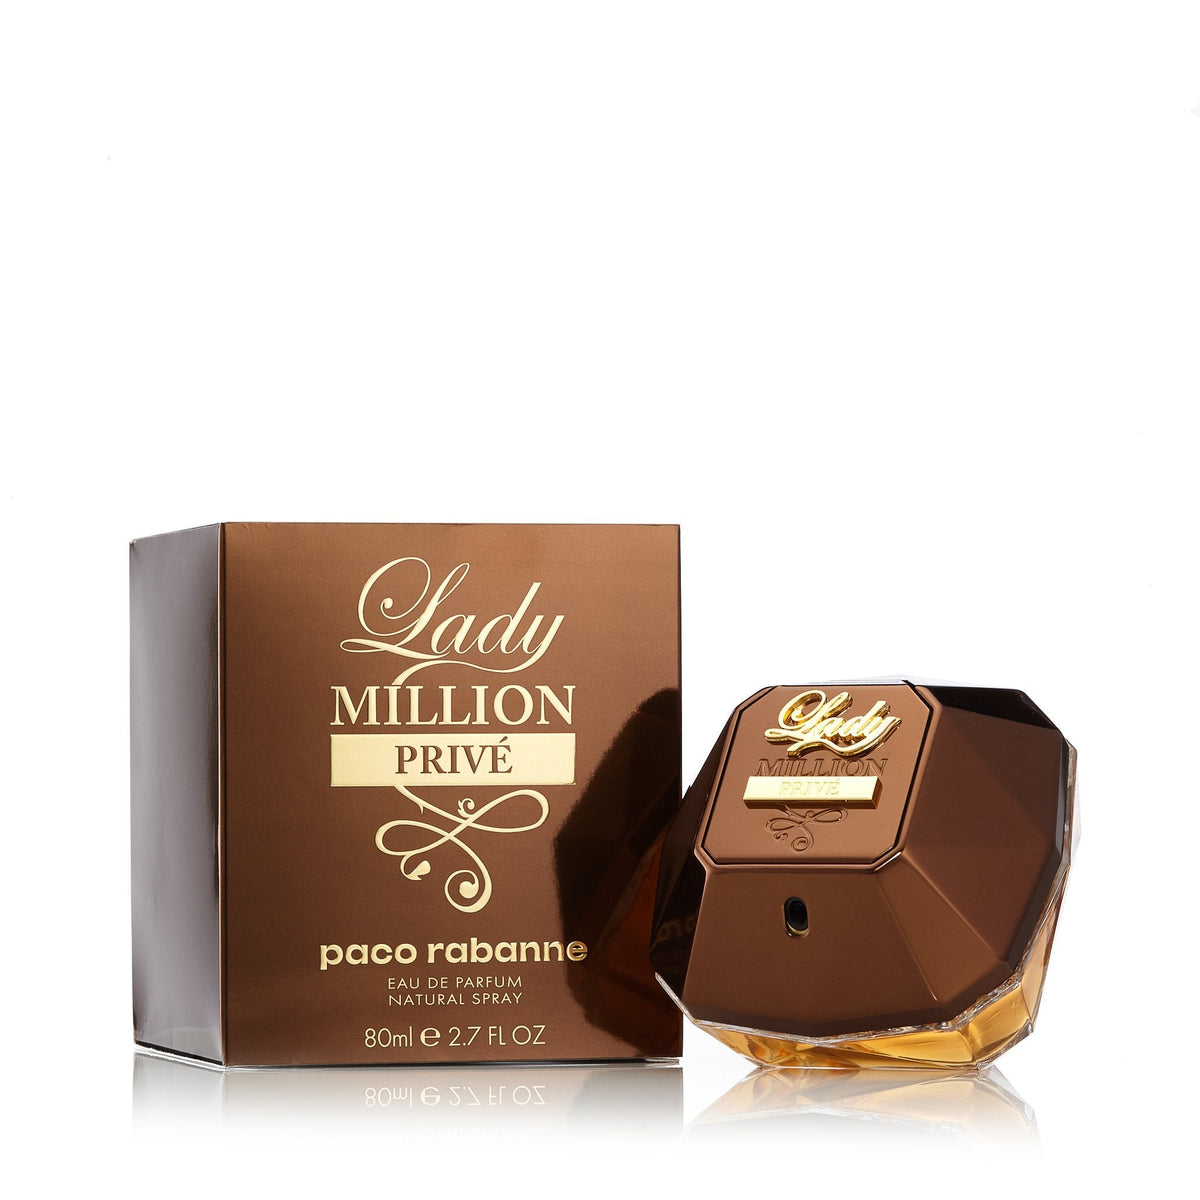 Lady Million Prive Eau de Parfum Spray for Women by Paco Rabanne 2.7 oz.